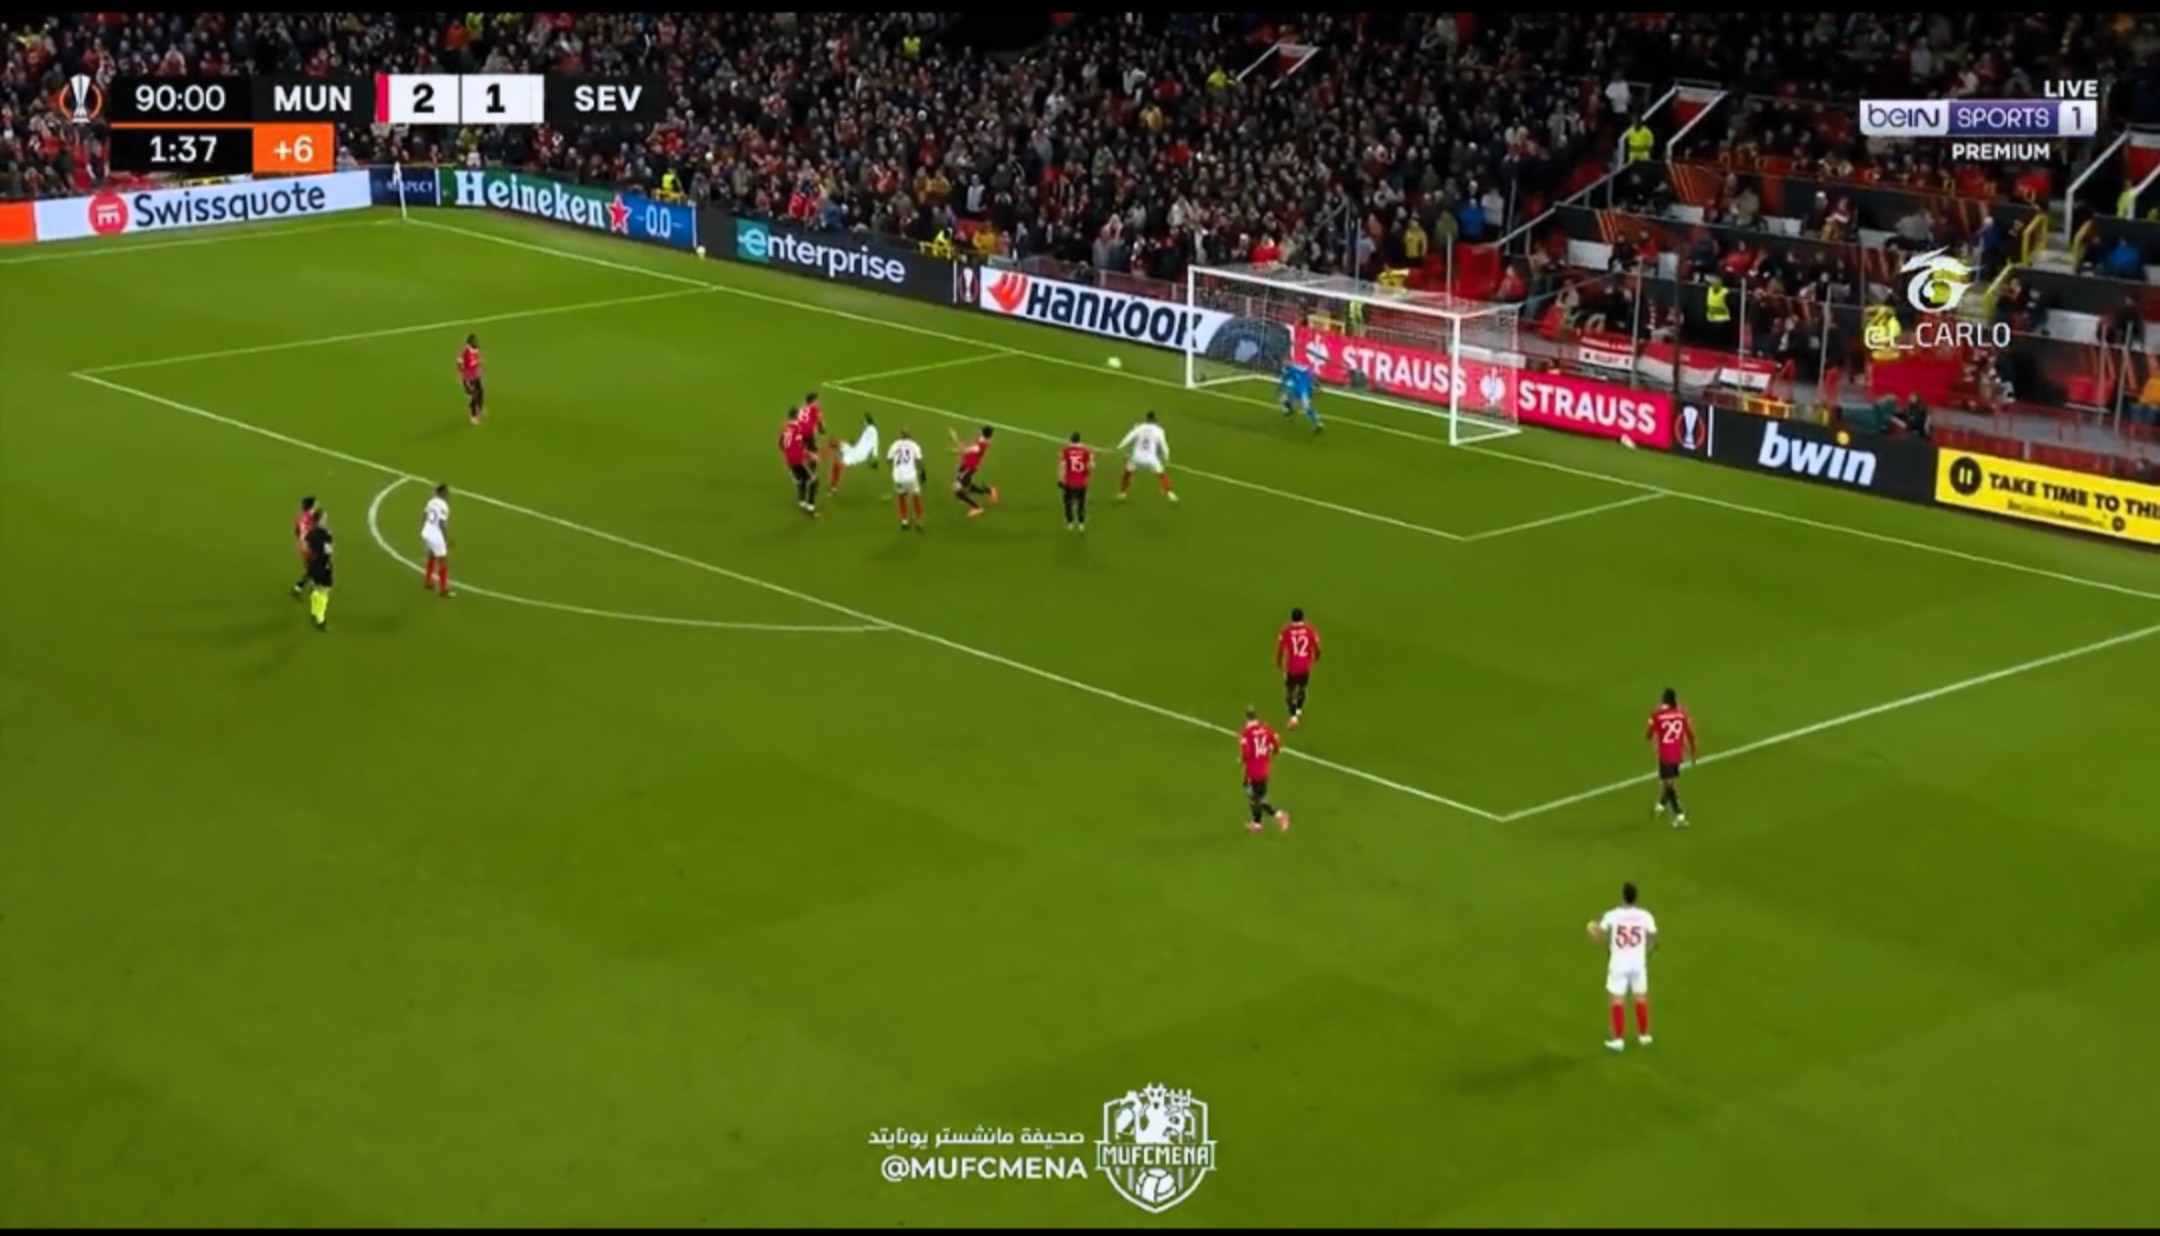 Harry Maguire a 93.percben öngólt szerzett a Sevilla ellen – VIDEÓ